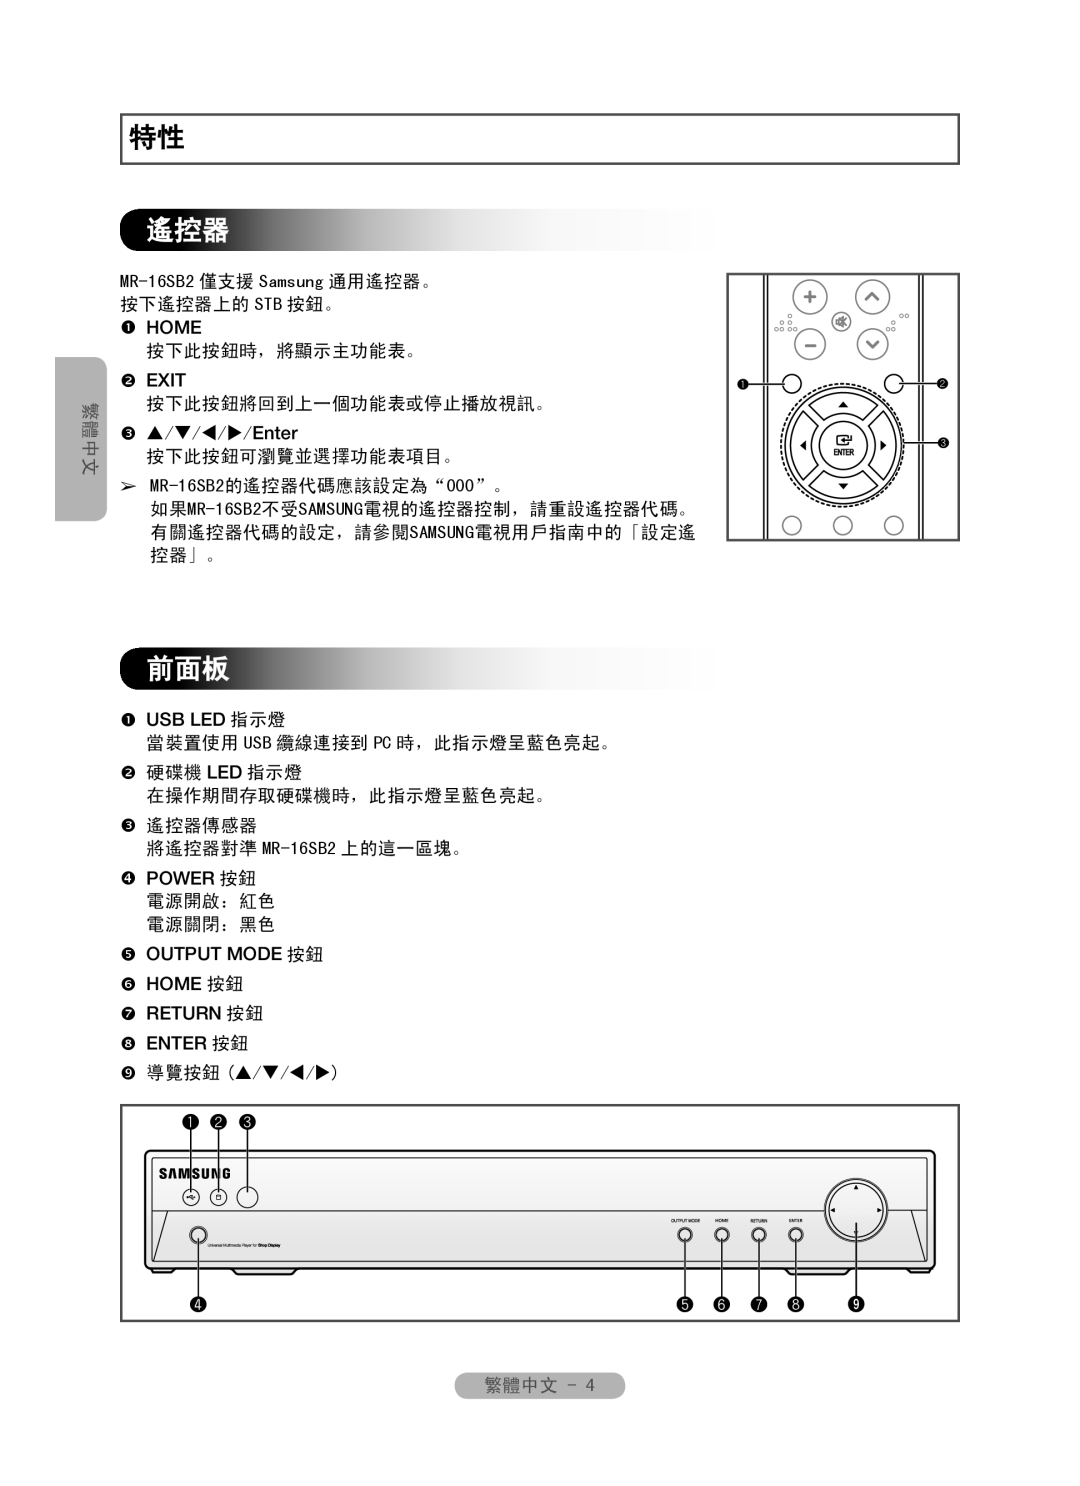 Samsung MR-16SB2 manual 繁體中文, 按下此按鈕時，將顯示主功能表。, 按下此按鈕將回到上一個功能表或停止播放視訊。, 按下此按鈕可瀏覽並選擇功能表項目。,  導覽按鈕 /// 